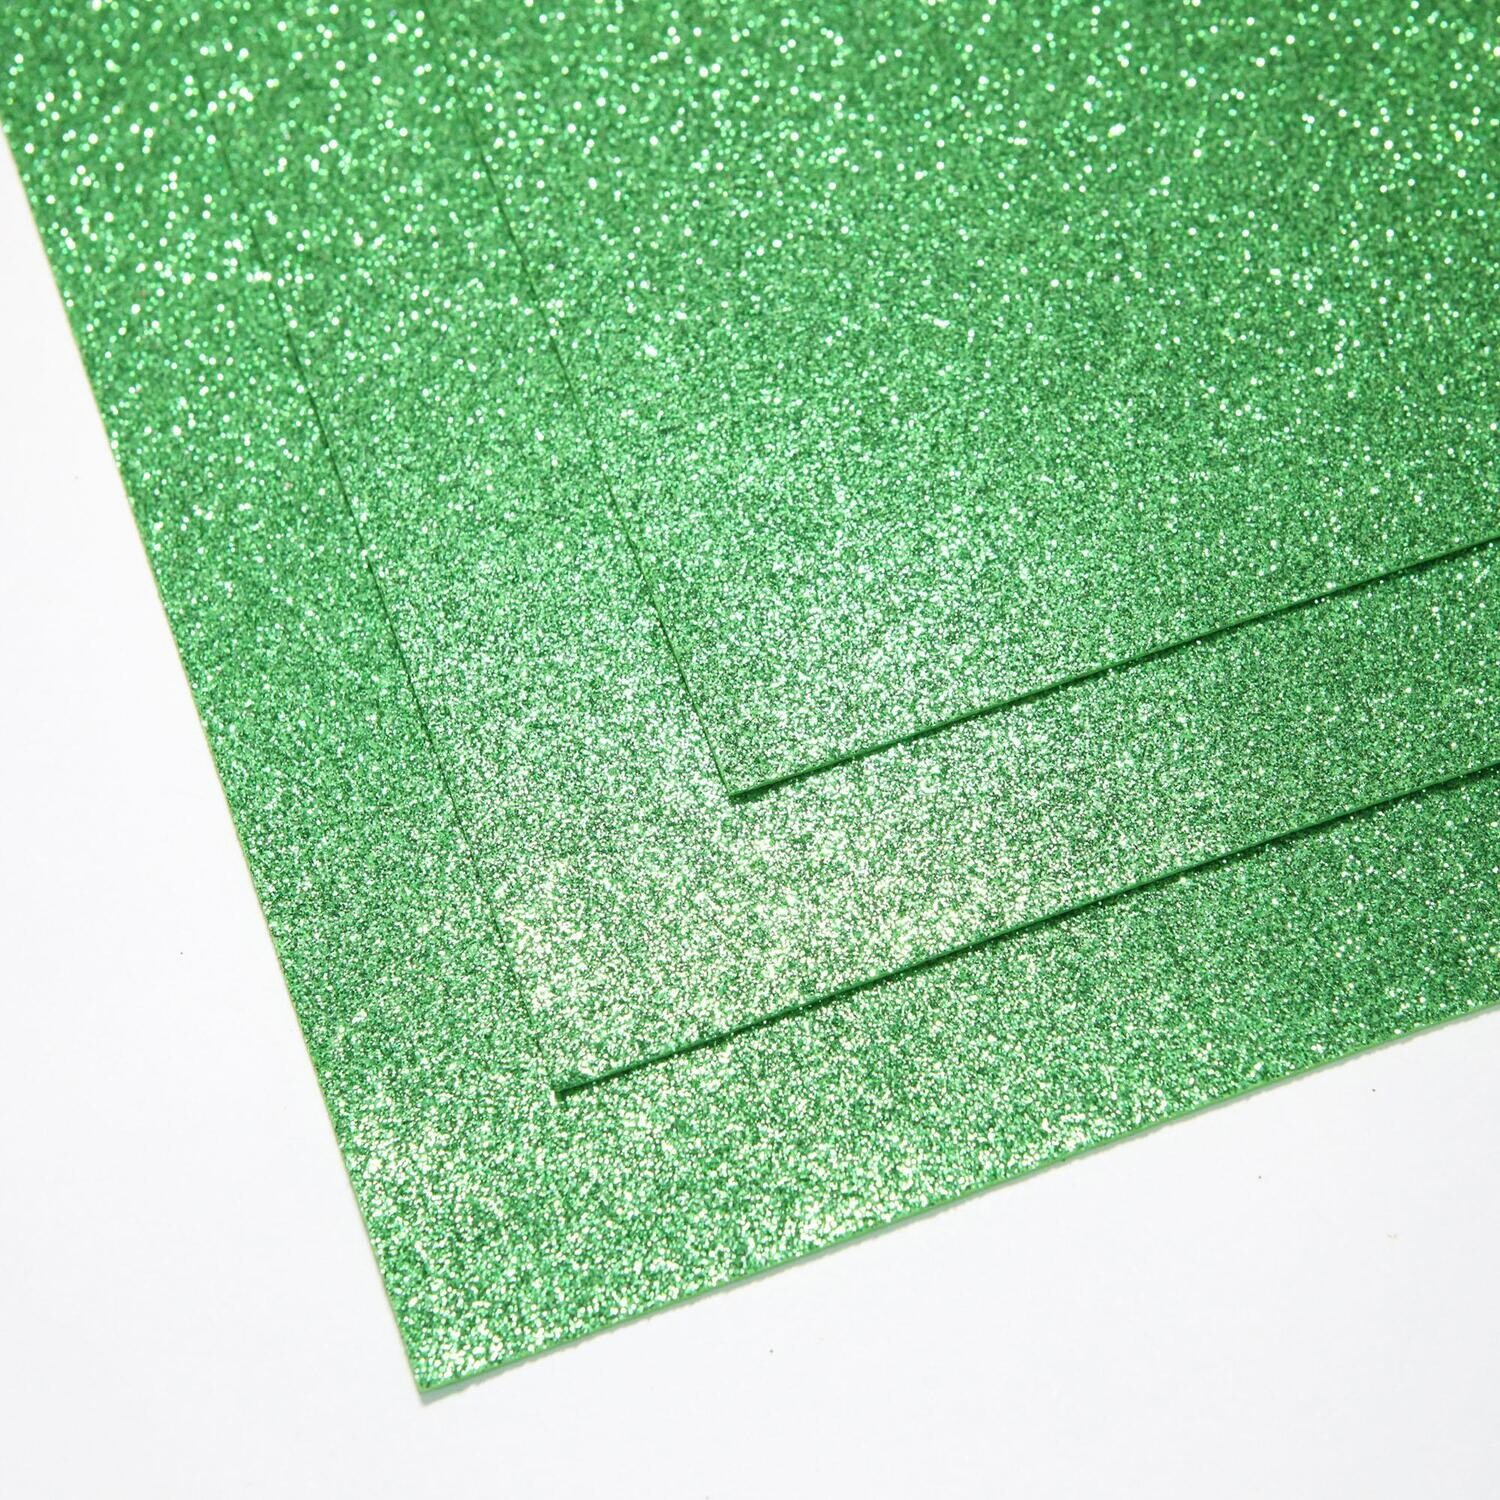 Фоамиран глиттерный - толщина 1,5 мм , размер листа 60/70 см.
Цвет - светло-зелёный